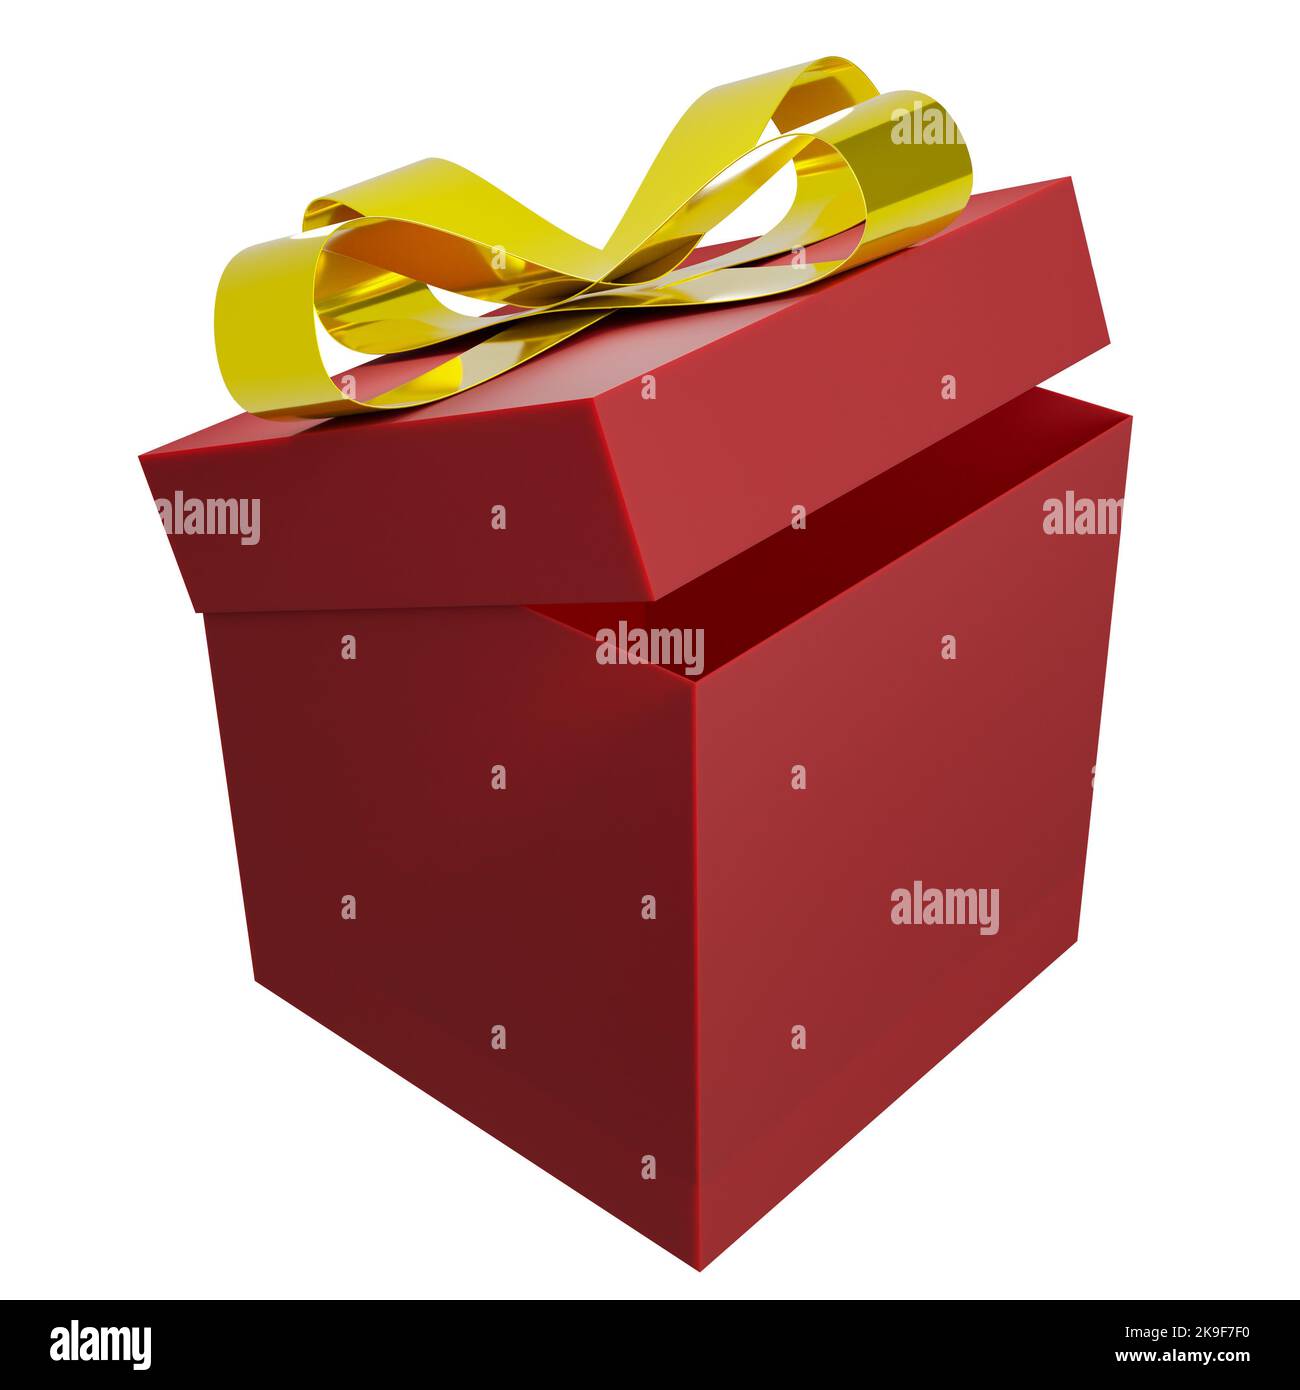 3d resa di una scatola regalo di nuovo anno rossa con nodo d'arco dorato e nastri. Vacanze invernali, natale relativa illustrazione di un regalo con spazio di testo Foto Stock